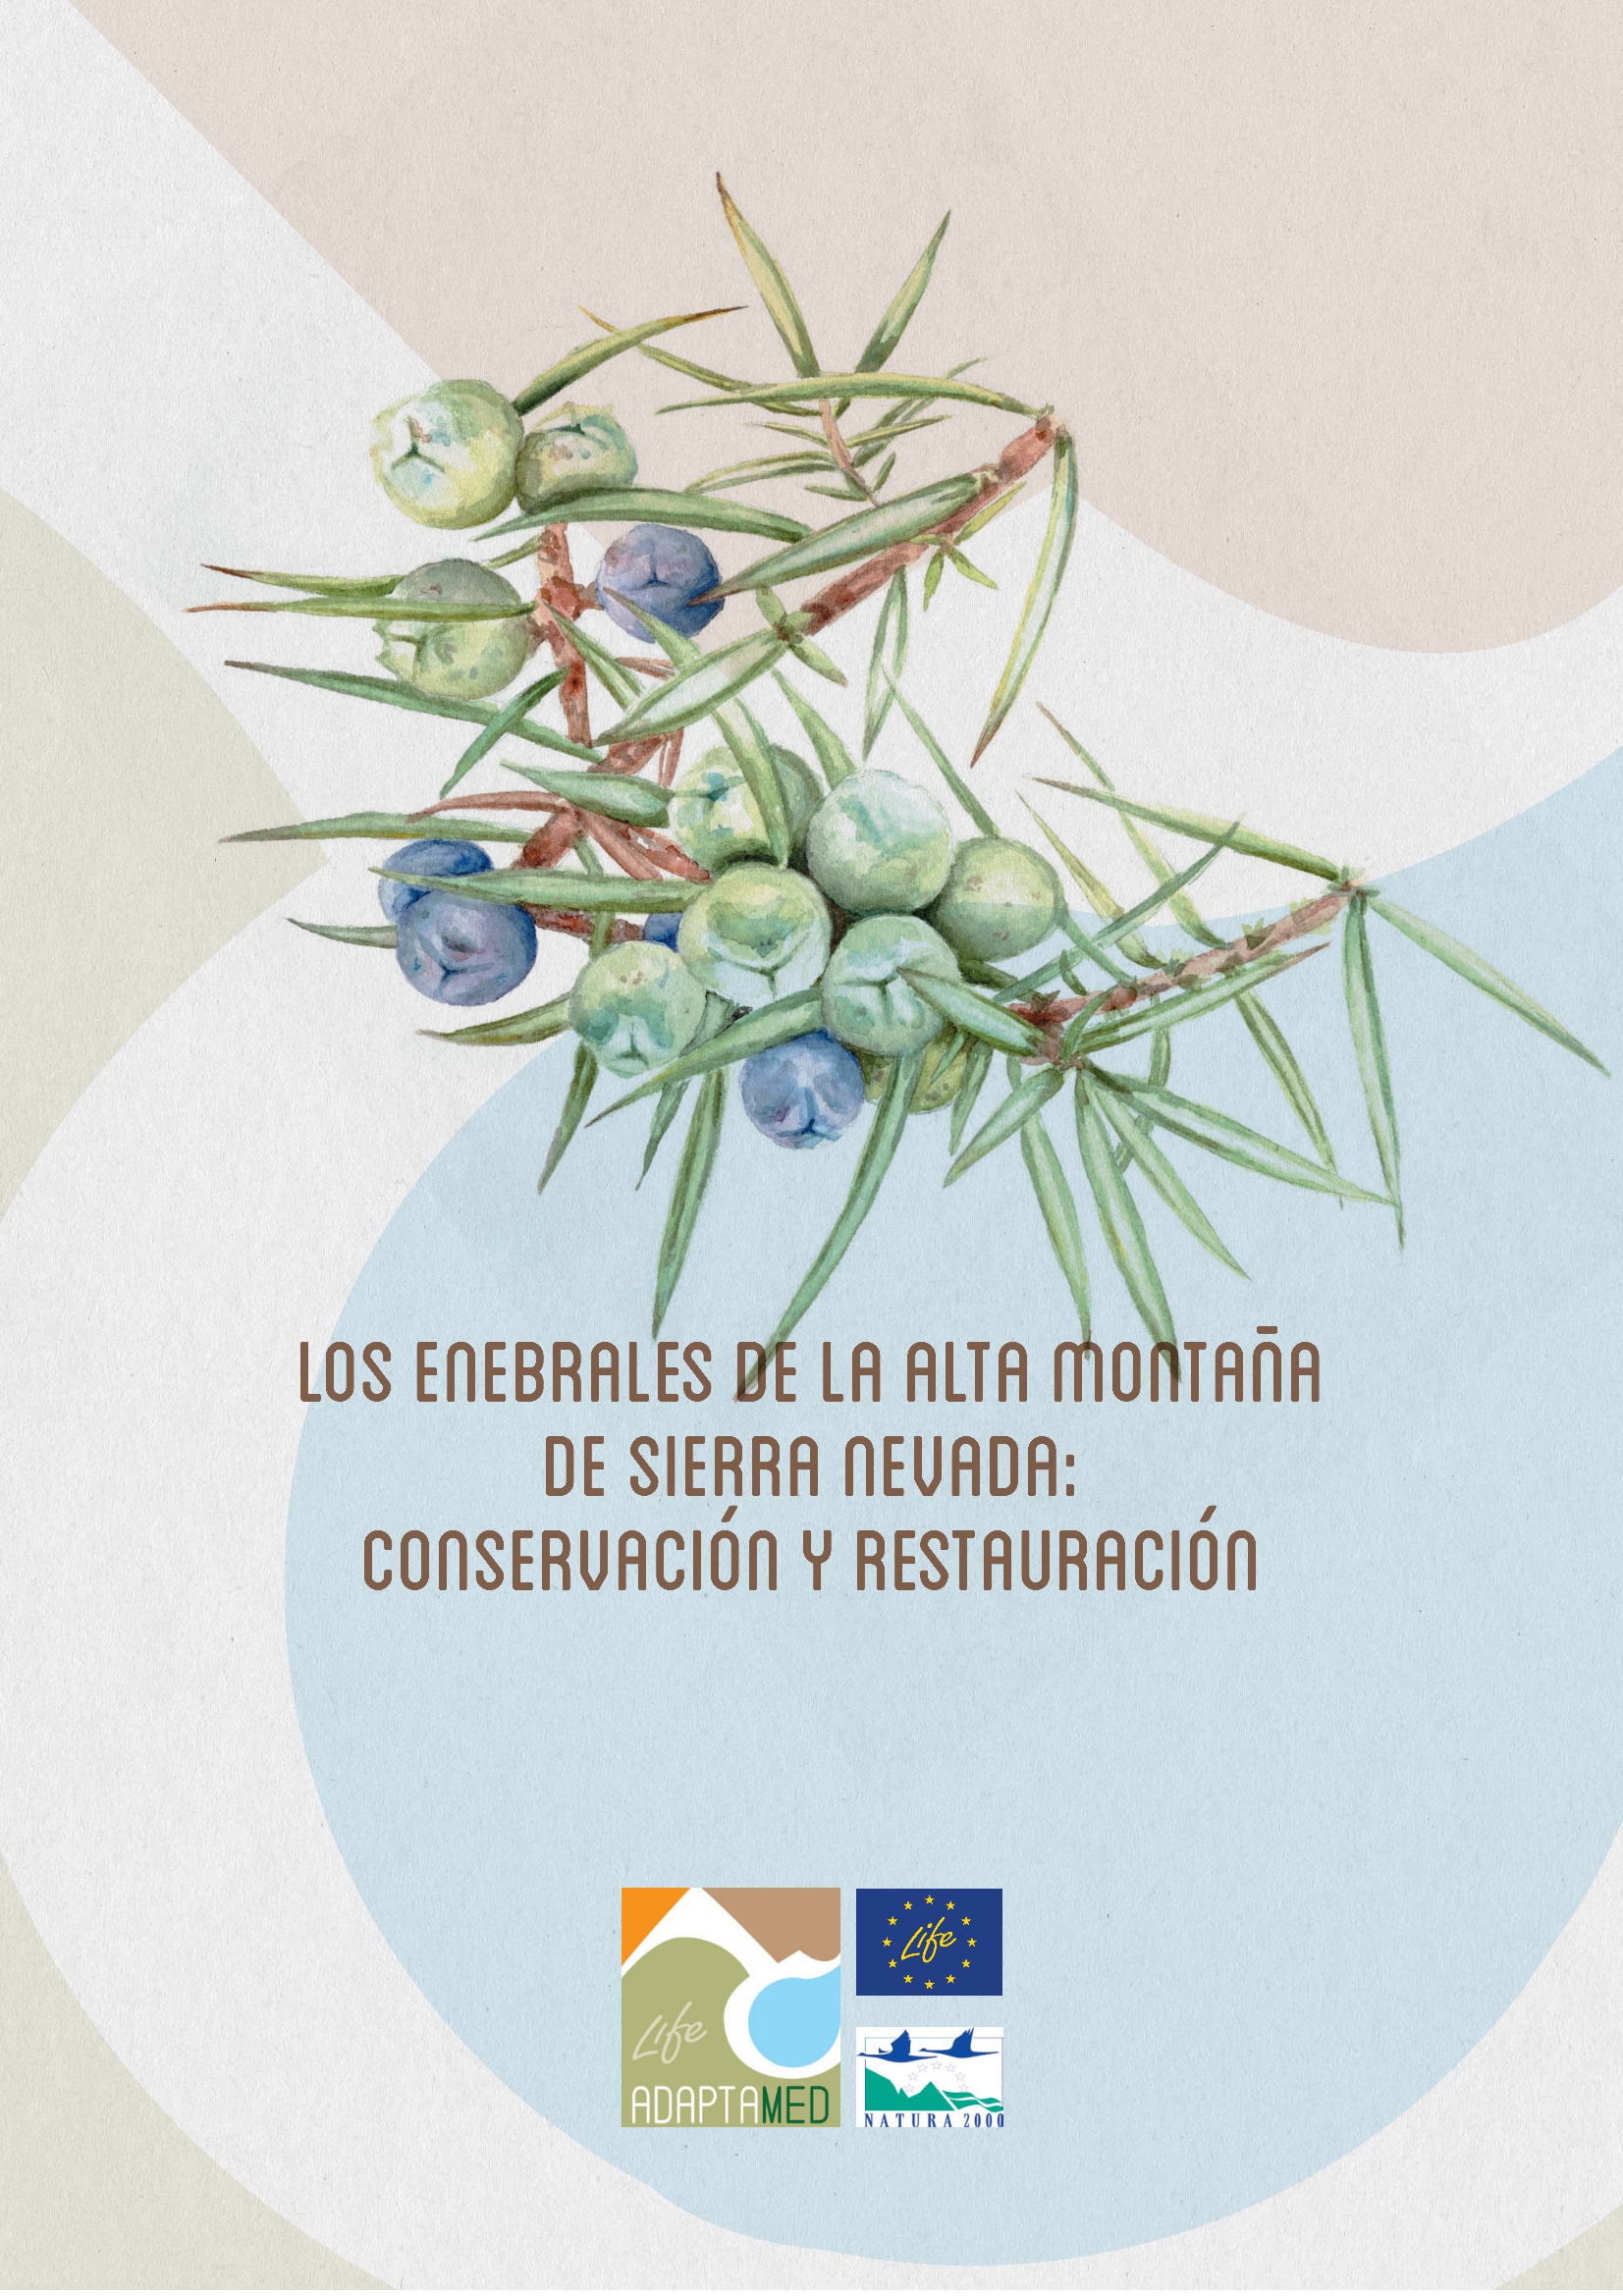 Los enebrales de la alta montaña de Sierra Nevada: conservación y resturación